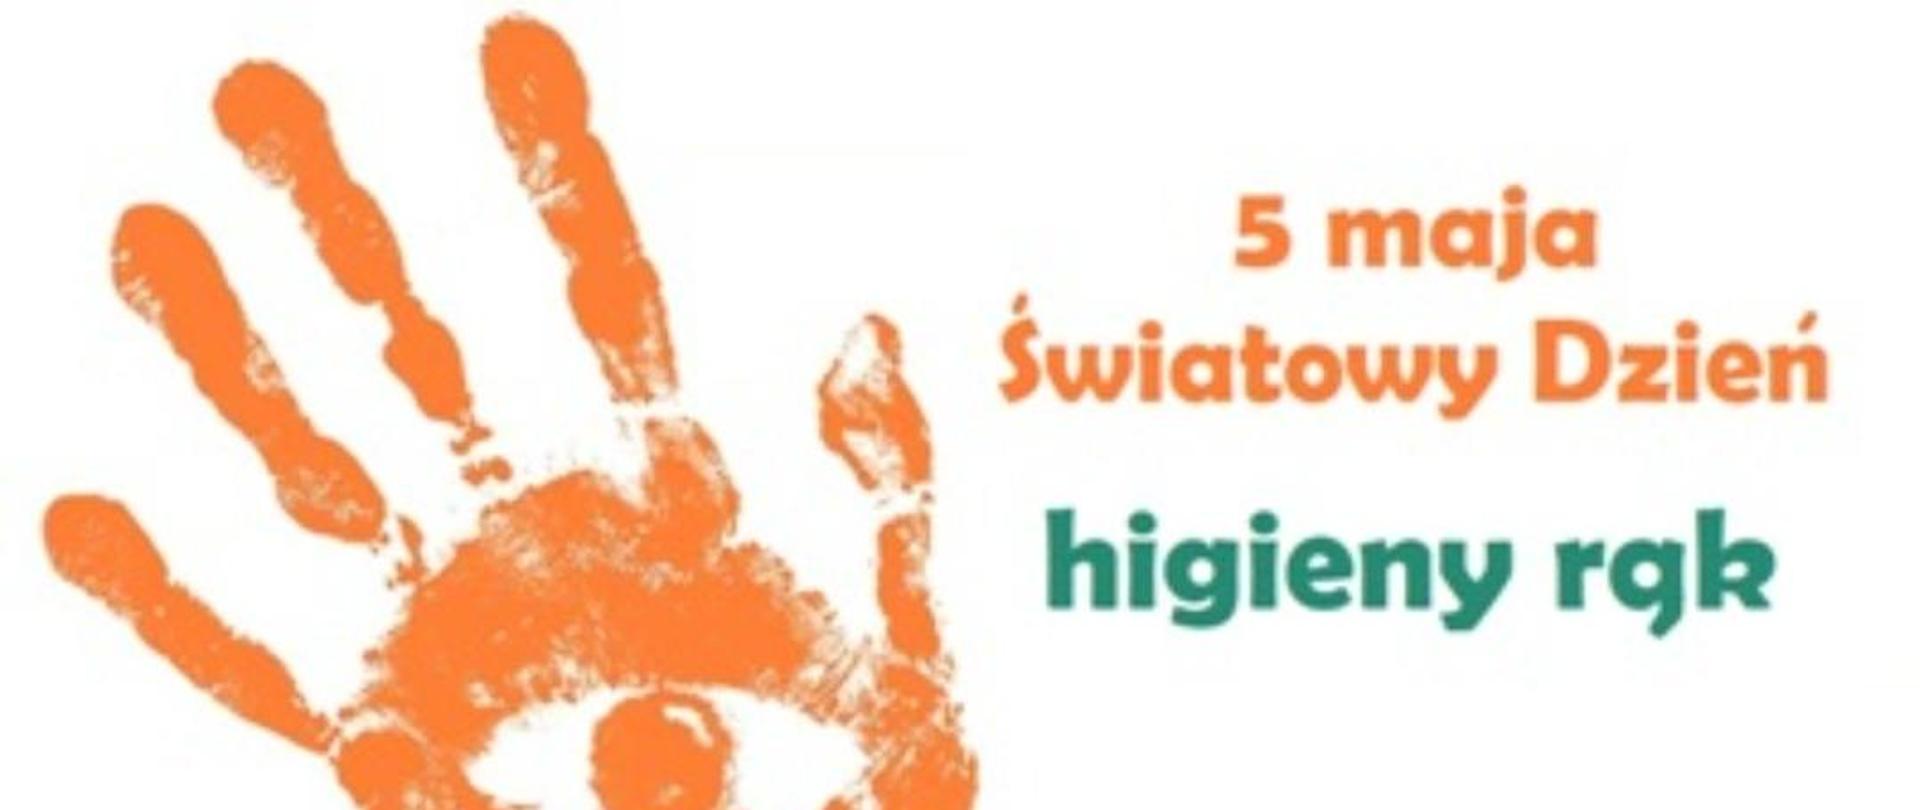 Światowy dzień higieny rąk